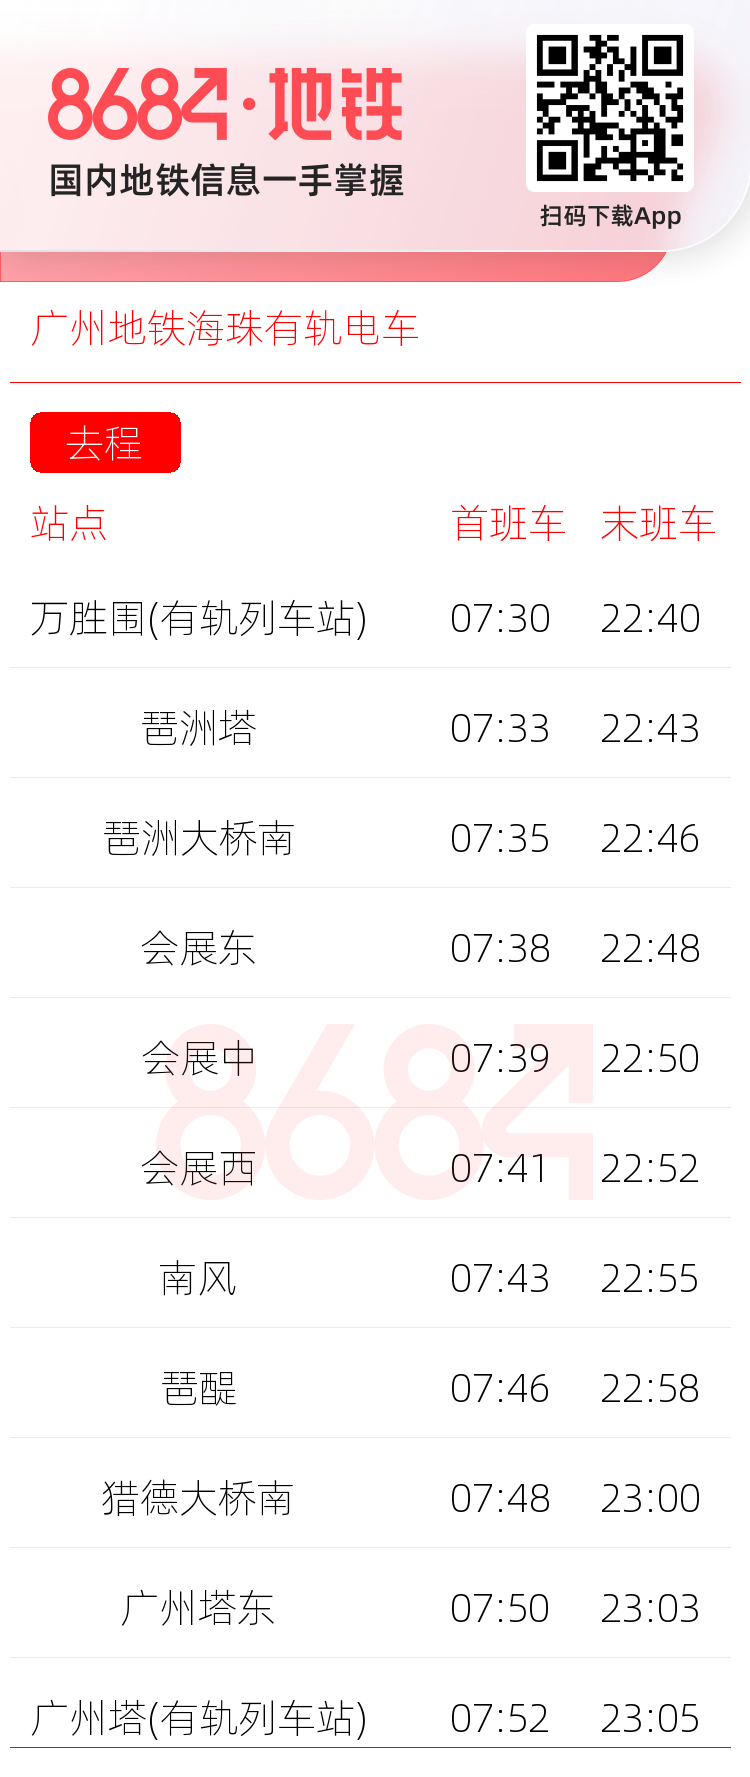 广州地铁海珠有轨电车运营时间表